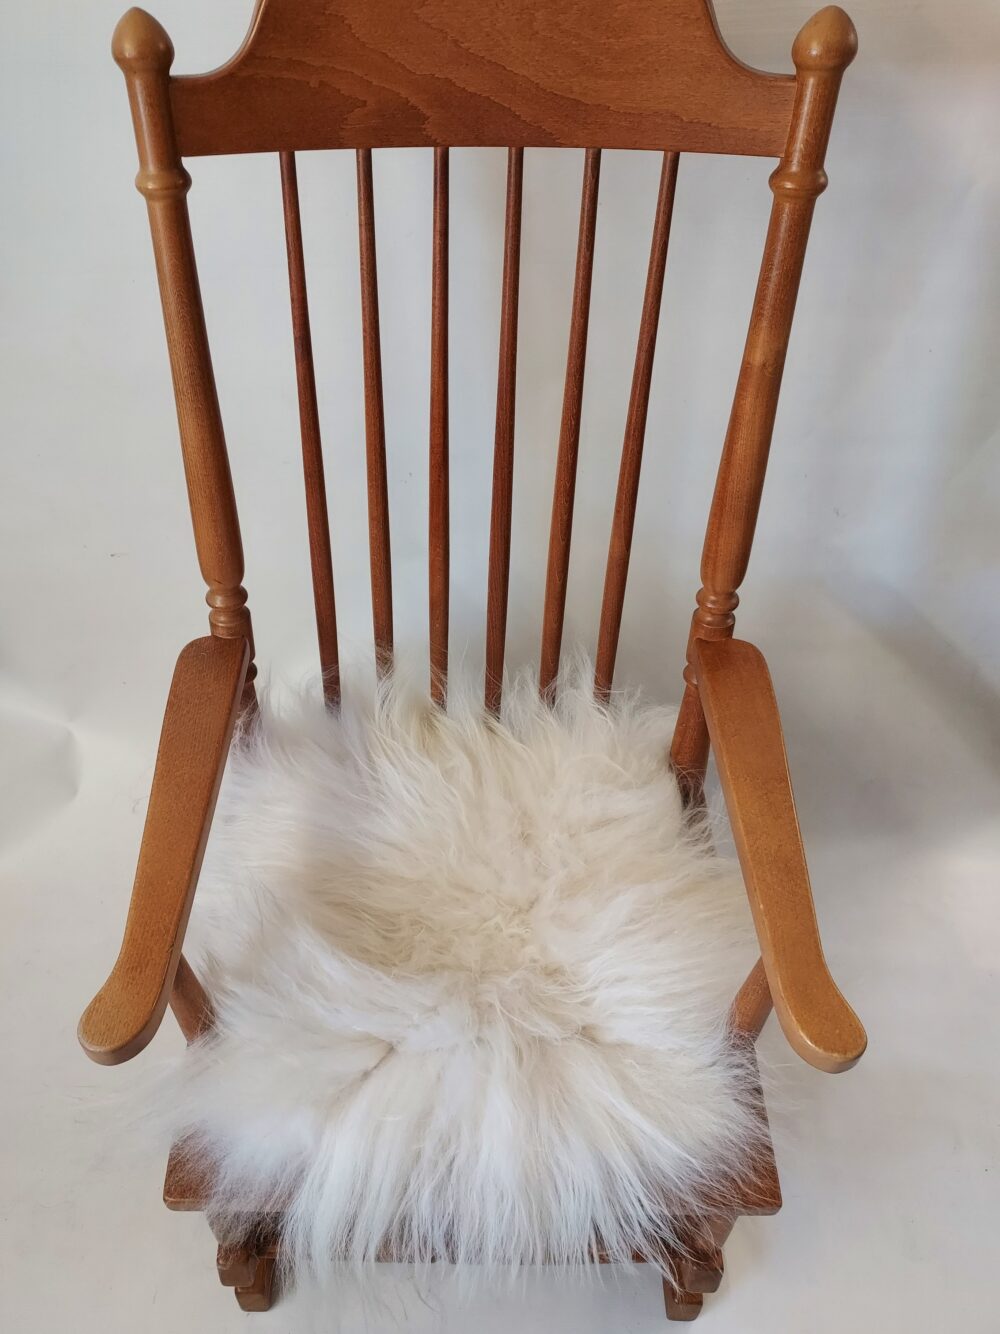 Sheepskin chair pad island leather chair pads Producent owczych skór dekoracyjnych | Tannery Sheepskin | KalSkór 9